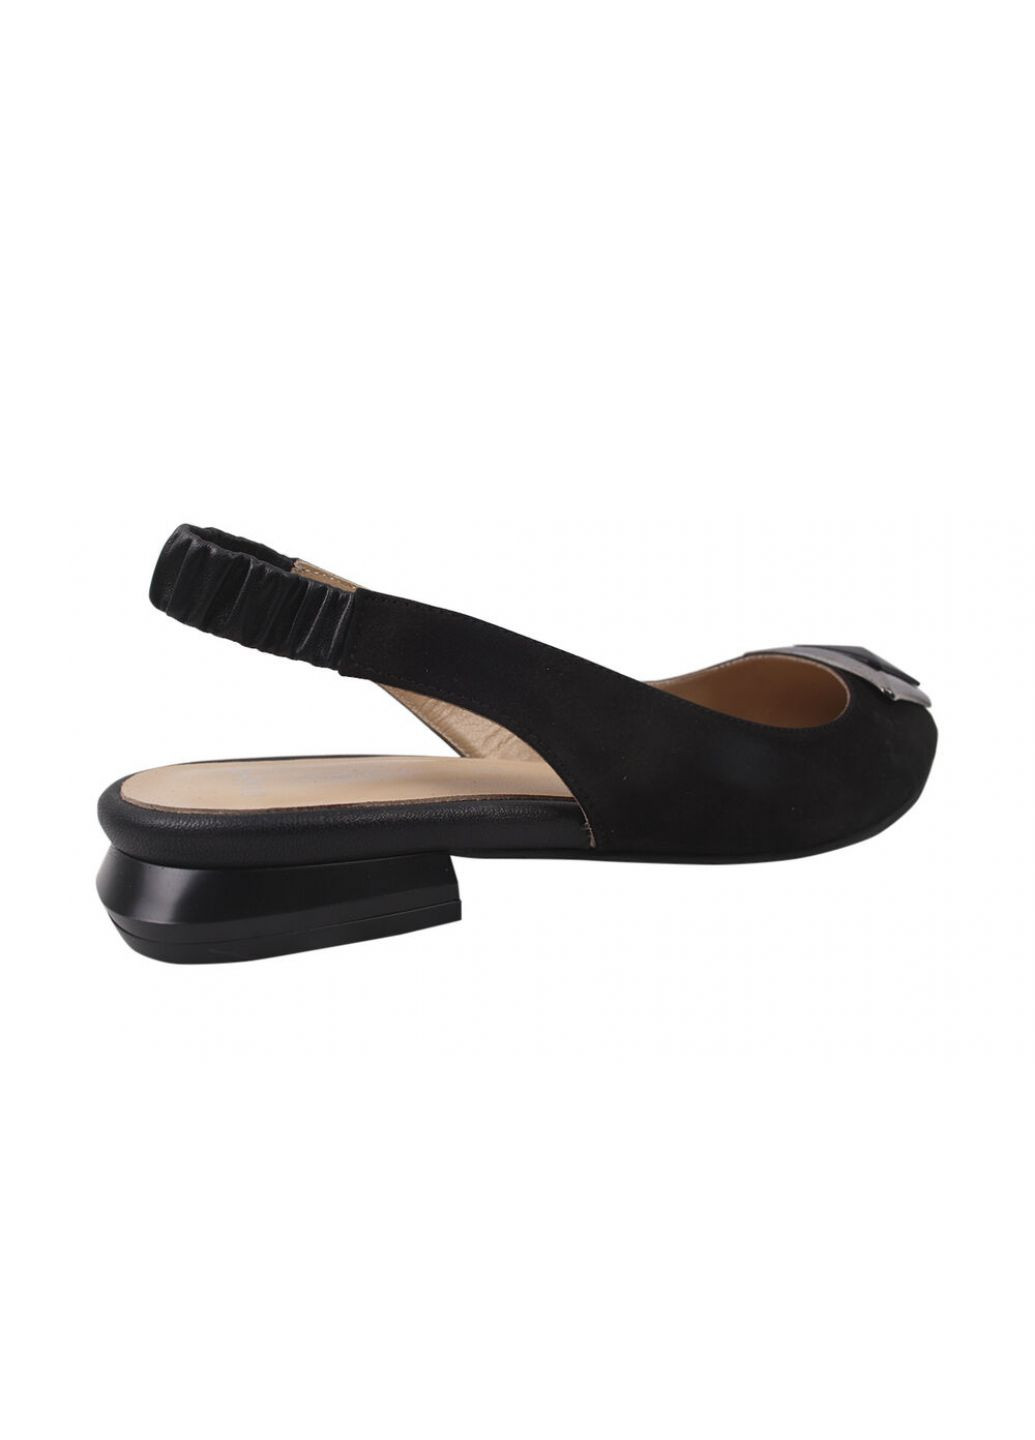 Туфли на низком ходу женские натуральная замша, цвет черный Lottini